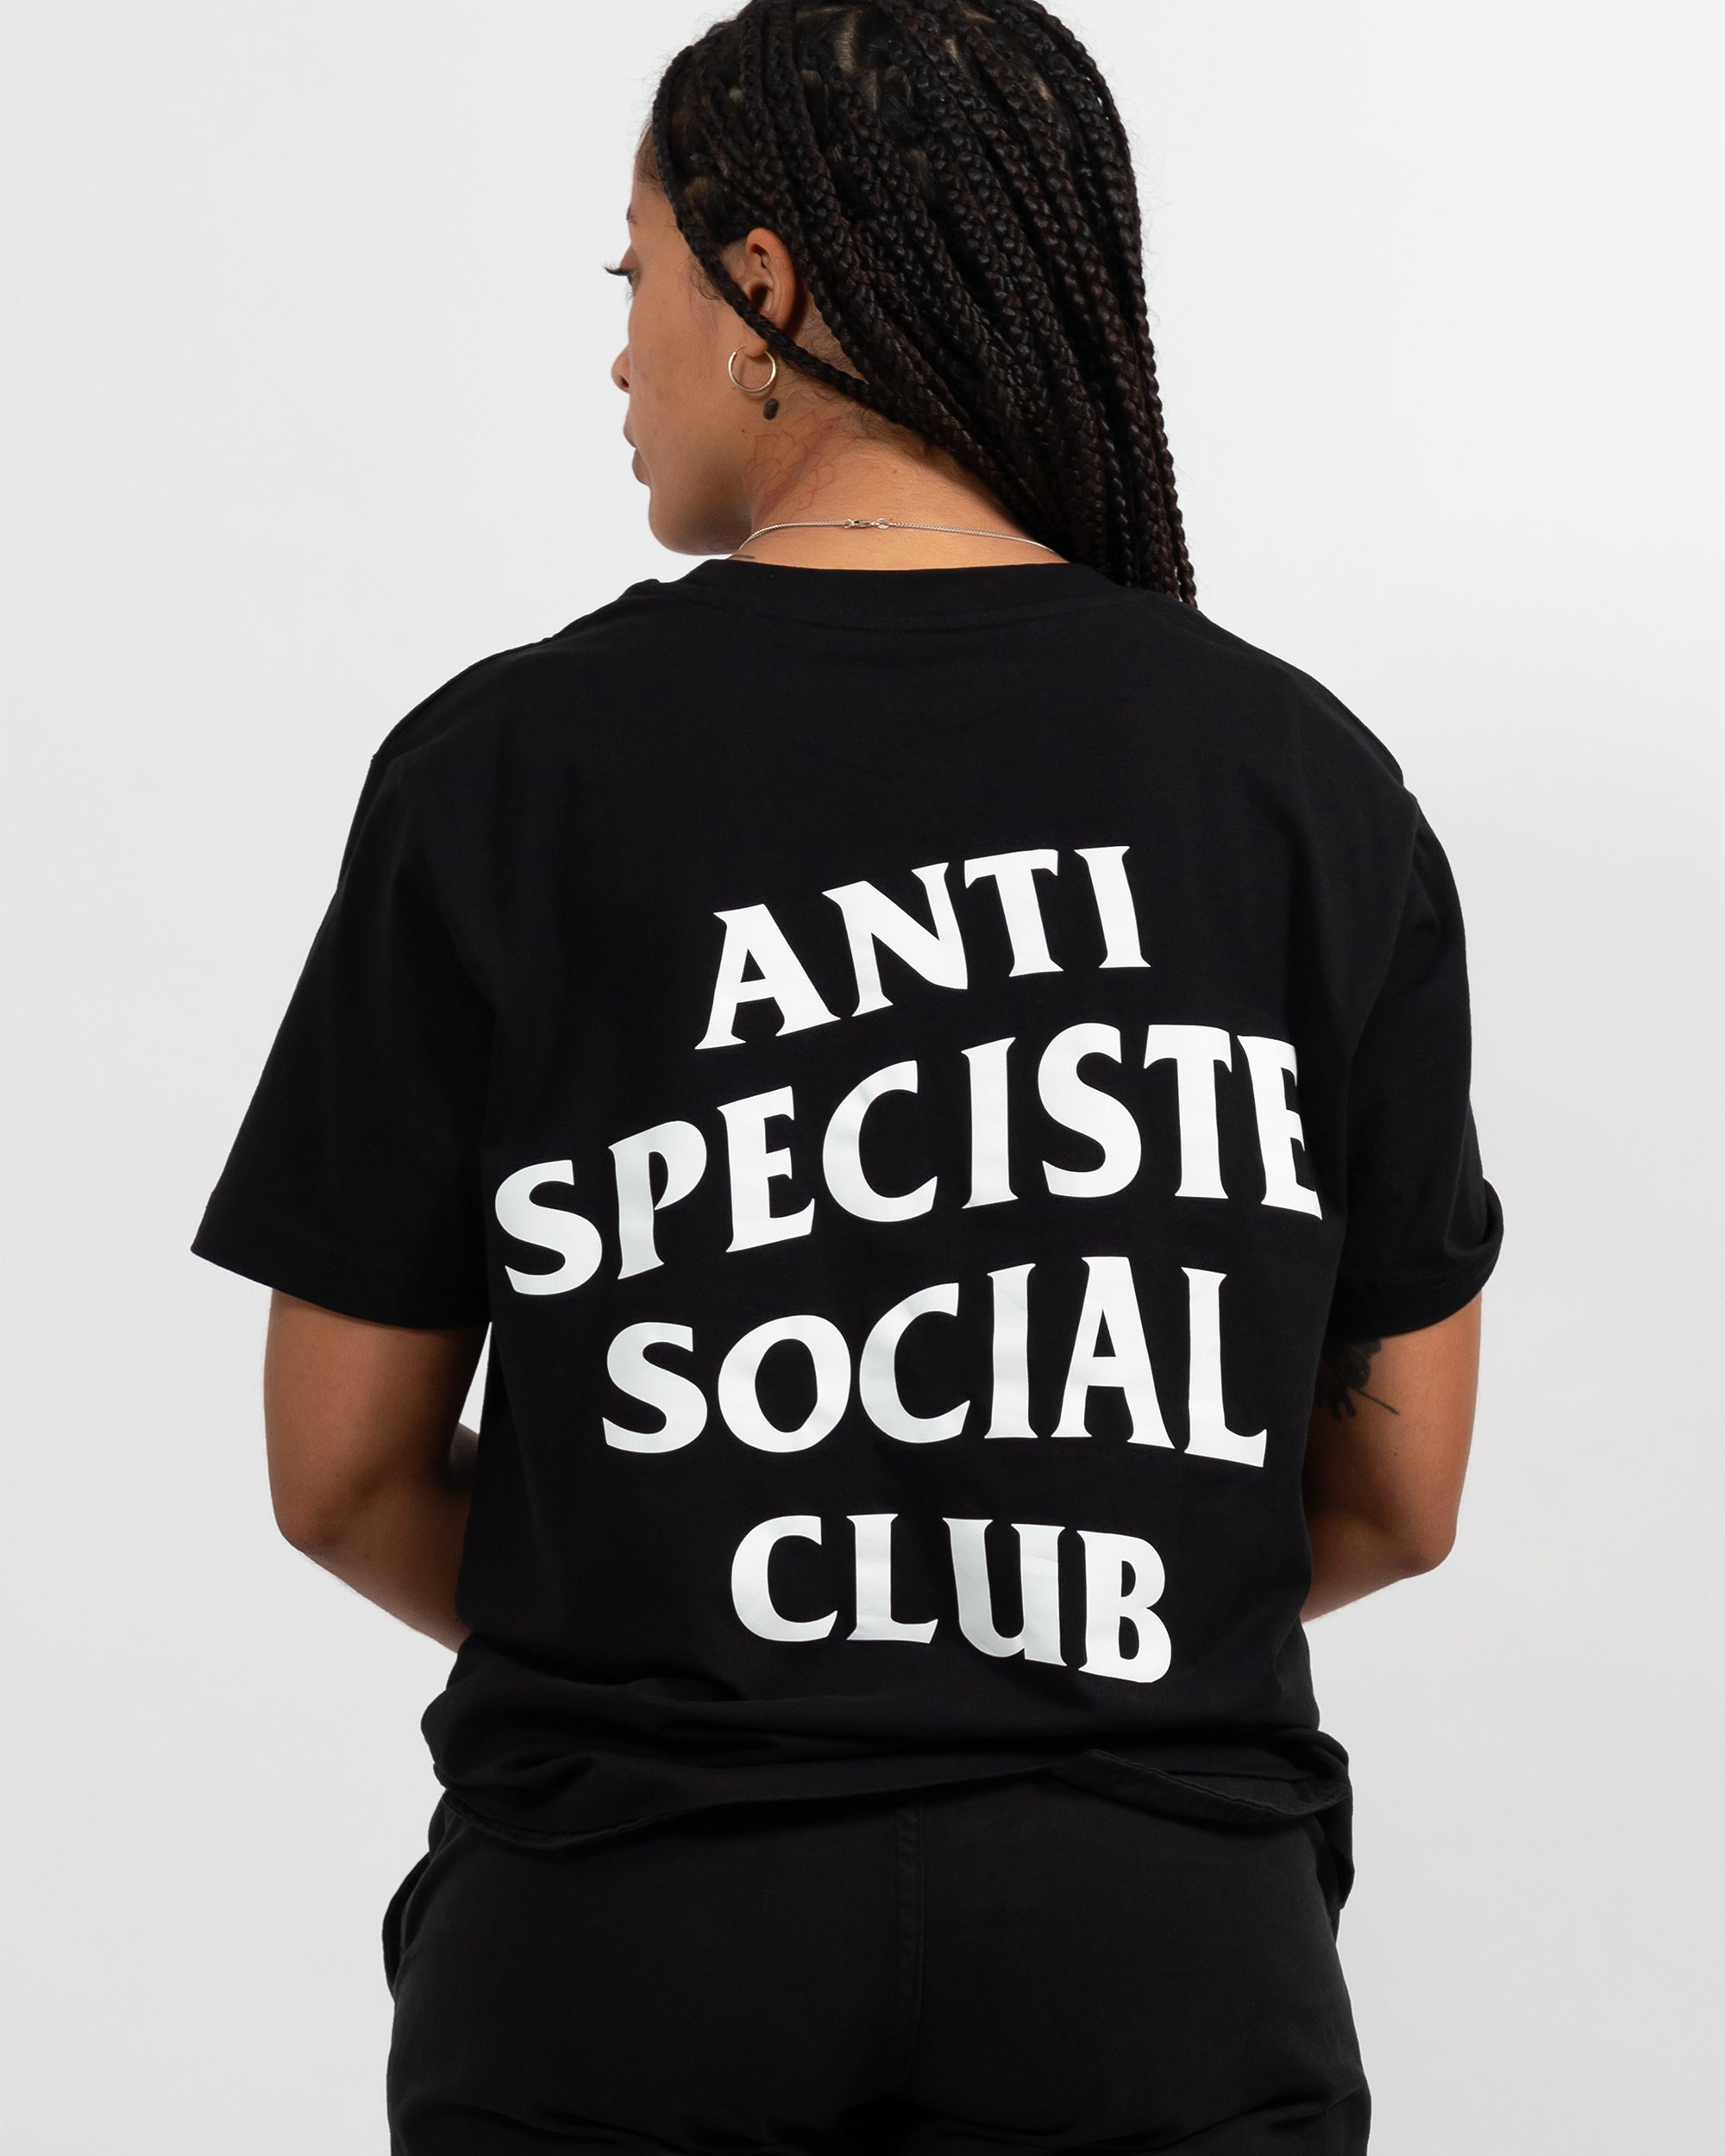 Tina porte notre modèle anti speciste social club en t-shirt noir